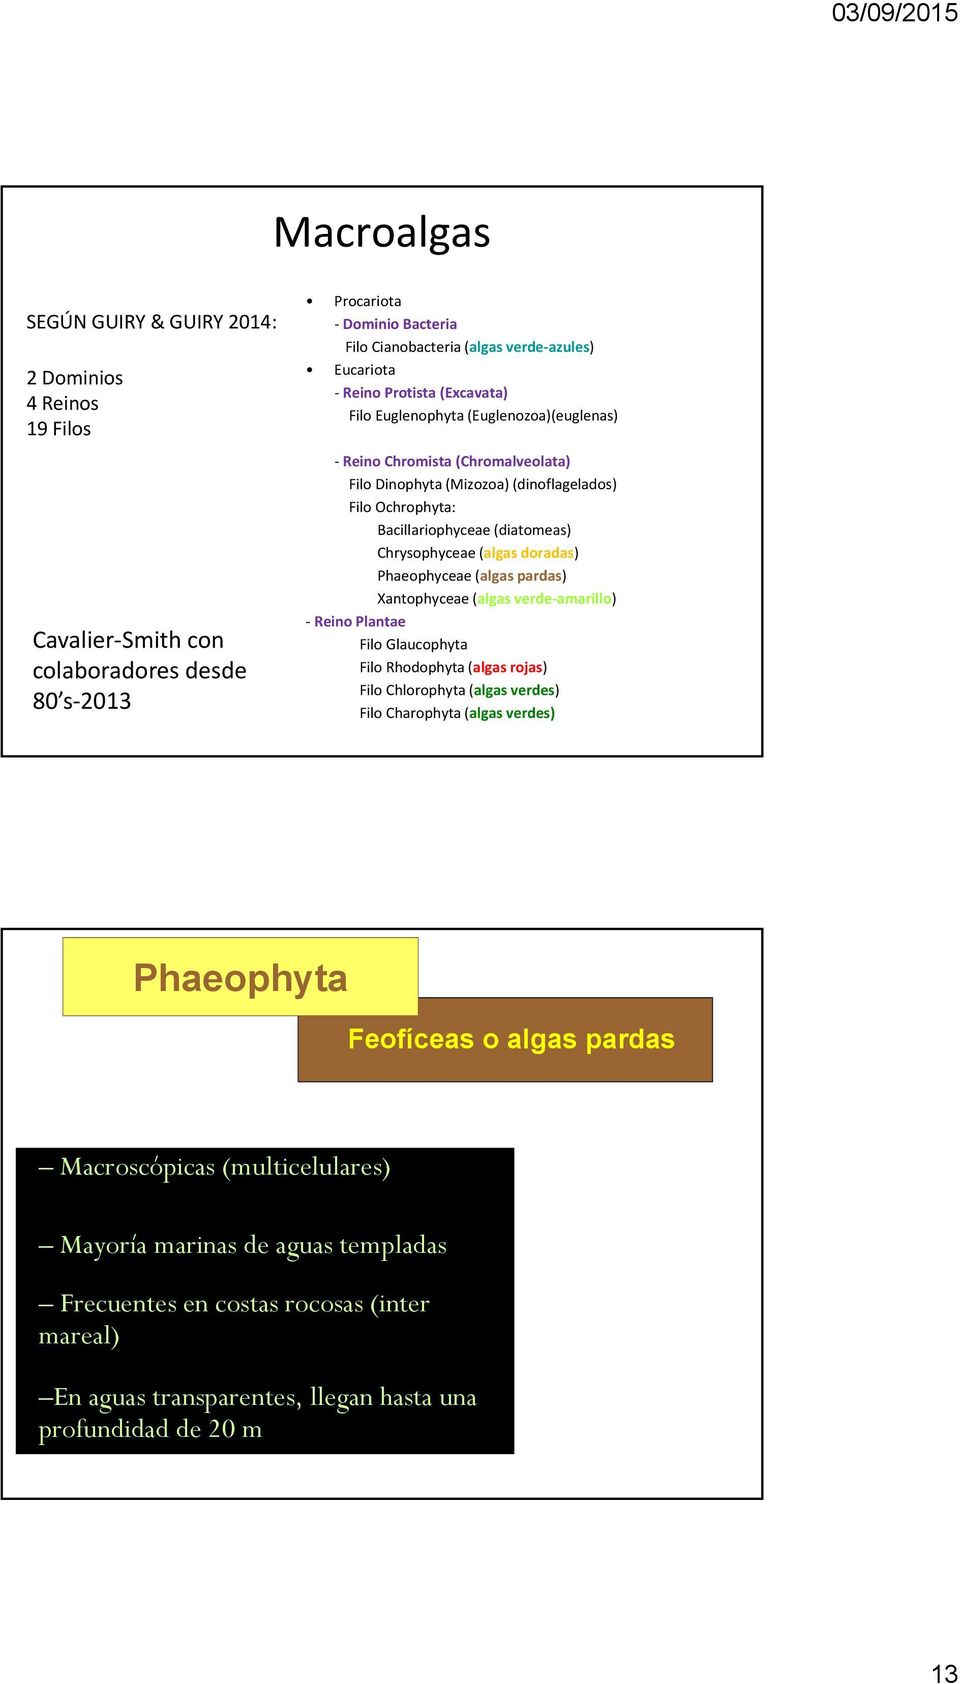 (algas doradas) Phaeophyceae (algas pardas) Xantophyceae (algas verde amarillo) Reino Plantae Filo Glaucophyta Filo Rhodophyta (algas rojas) Filo Chlorophyta (algas verdes) Filo Charophyta (algas